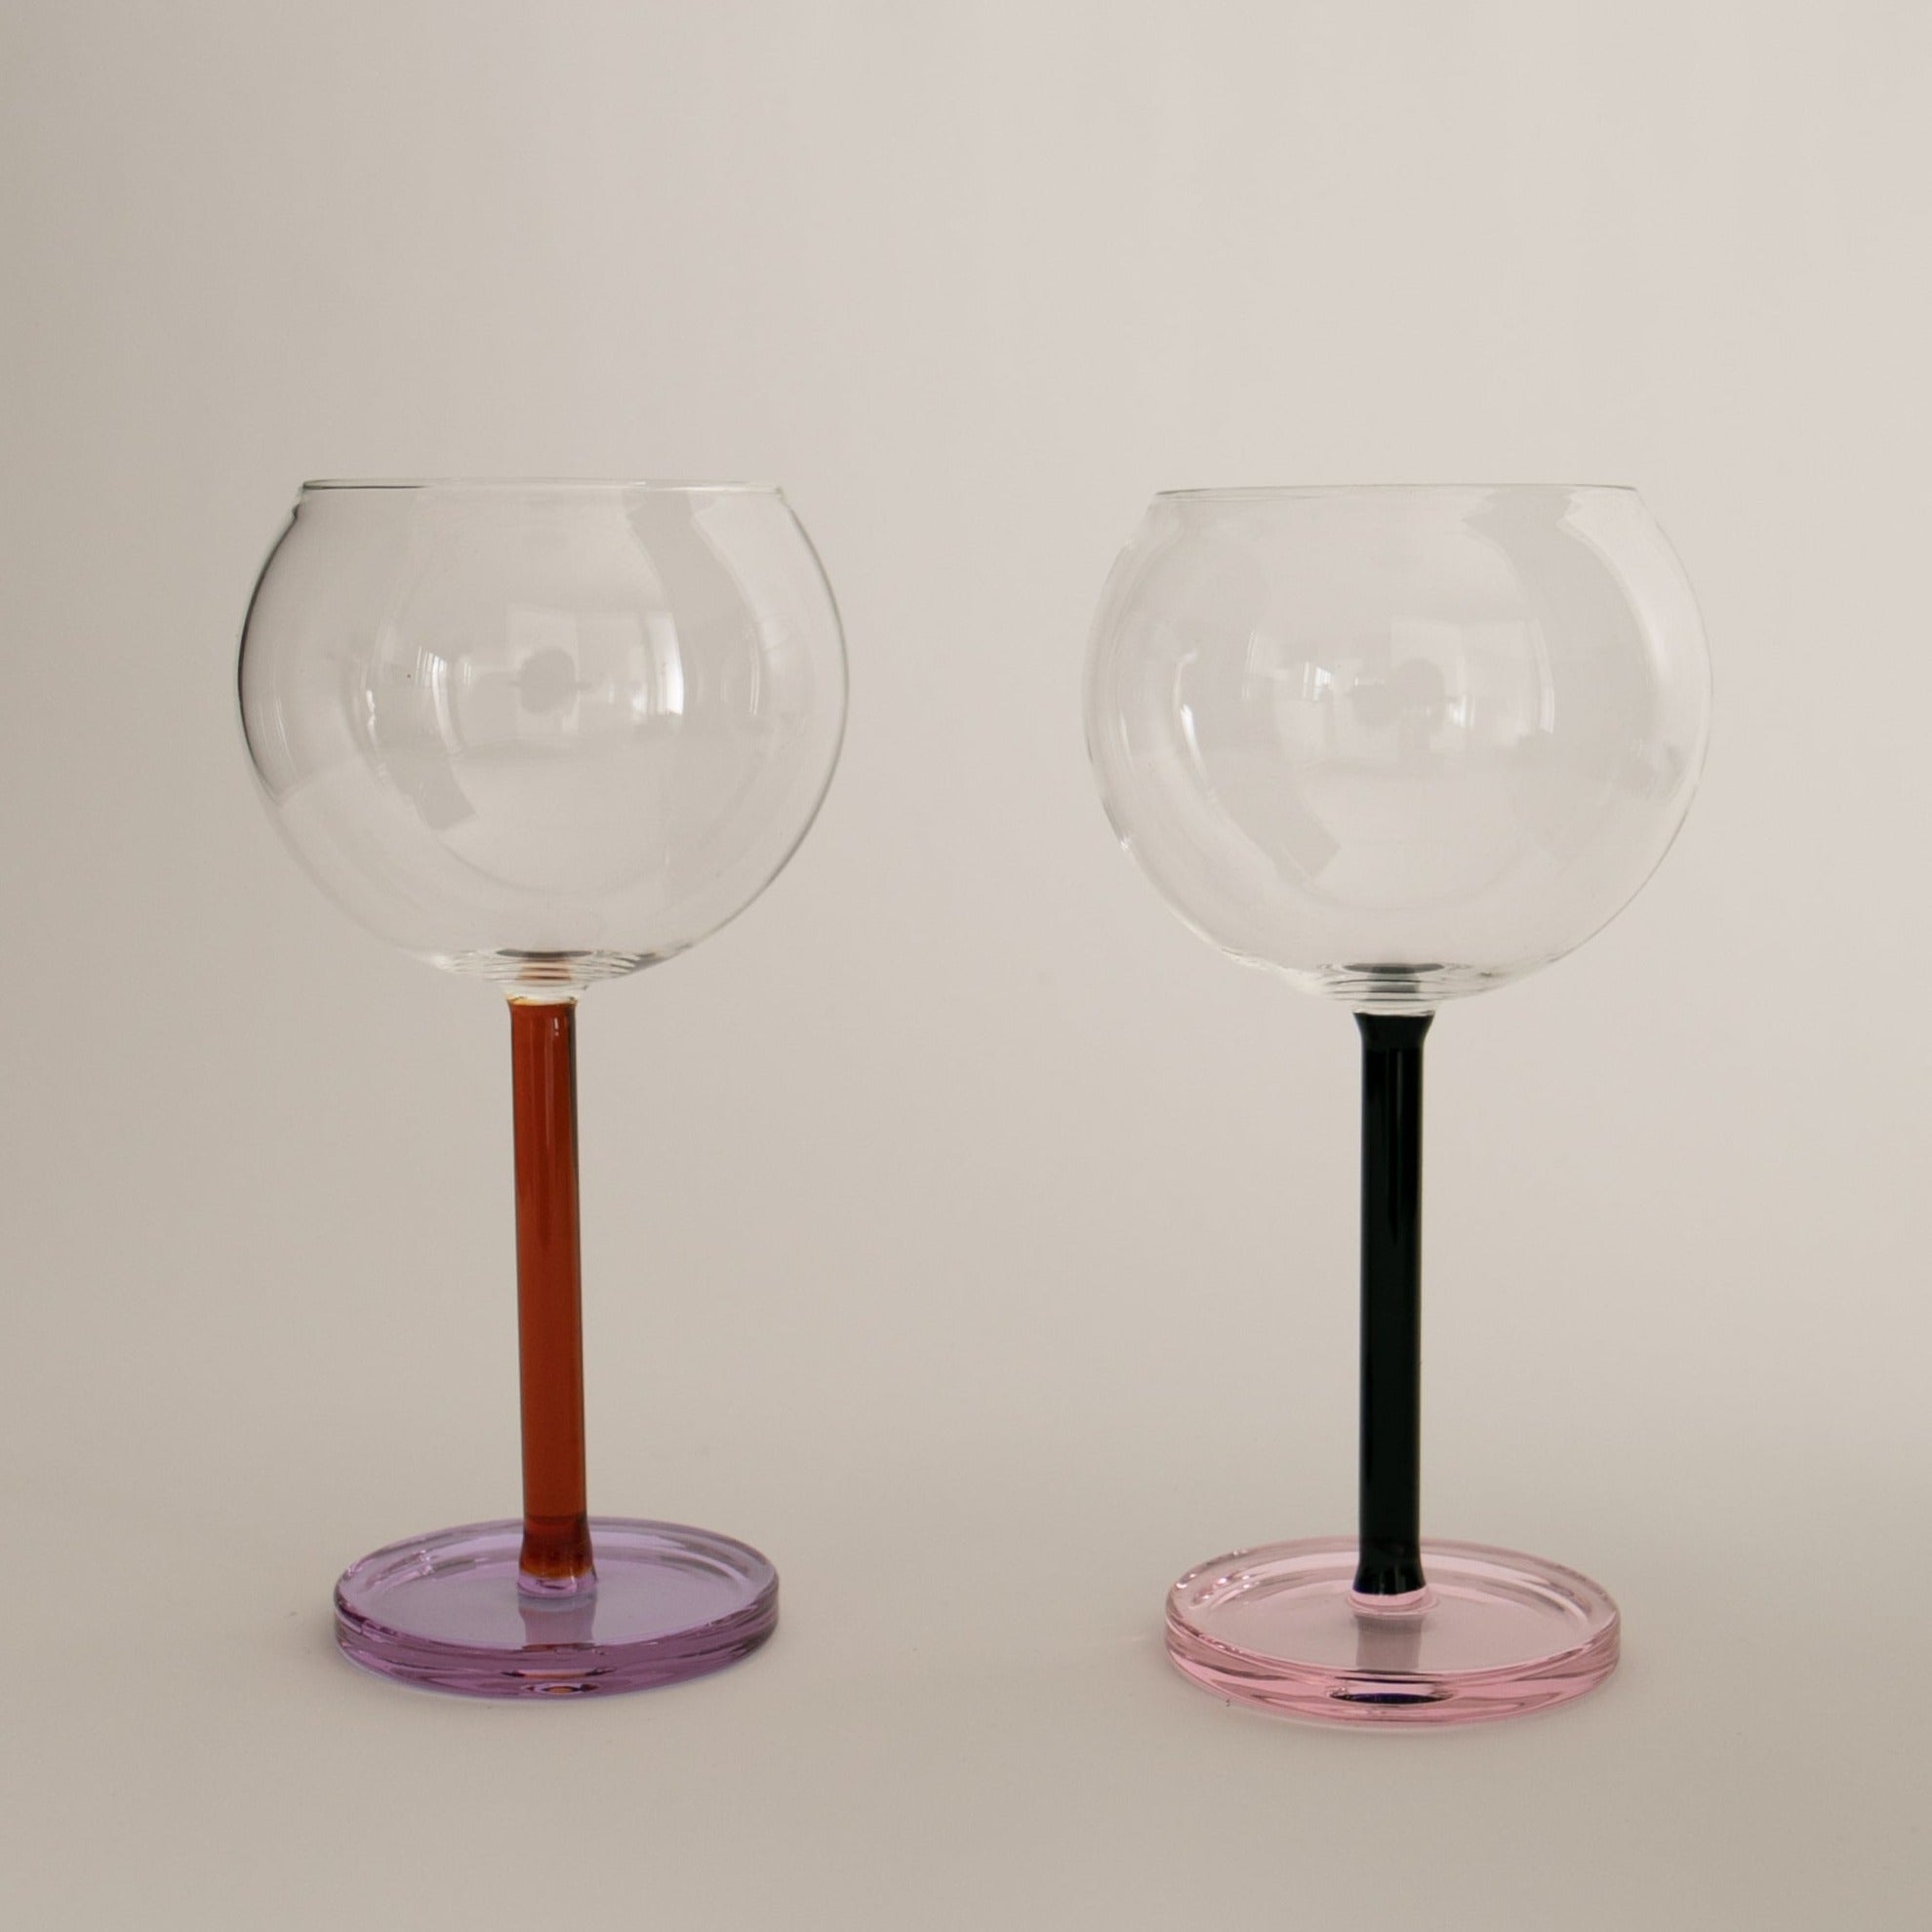 Sophie Lou Jacobsen | Bilboquet Wine Glasses, Set of 2 Golden Hour